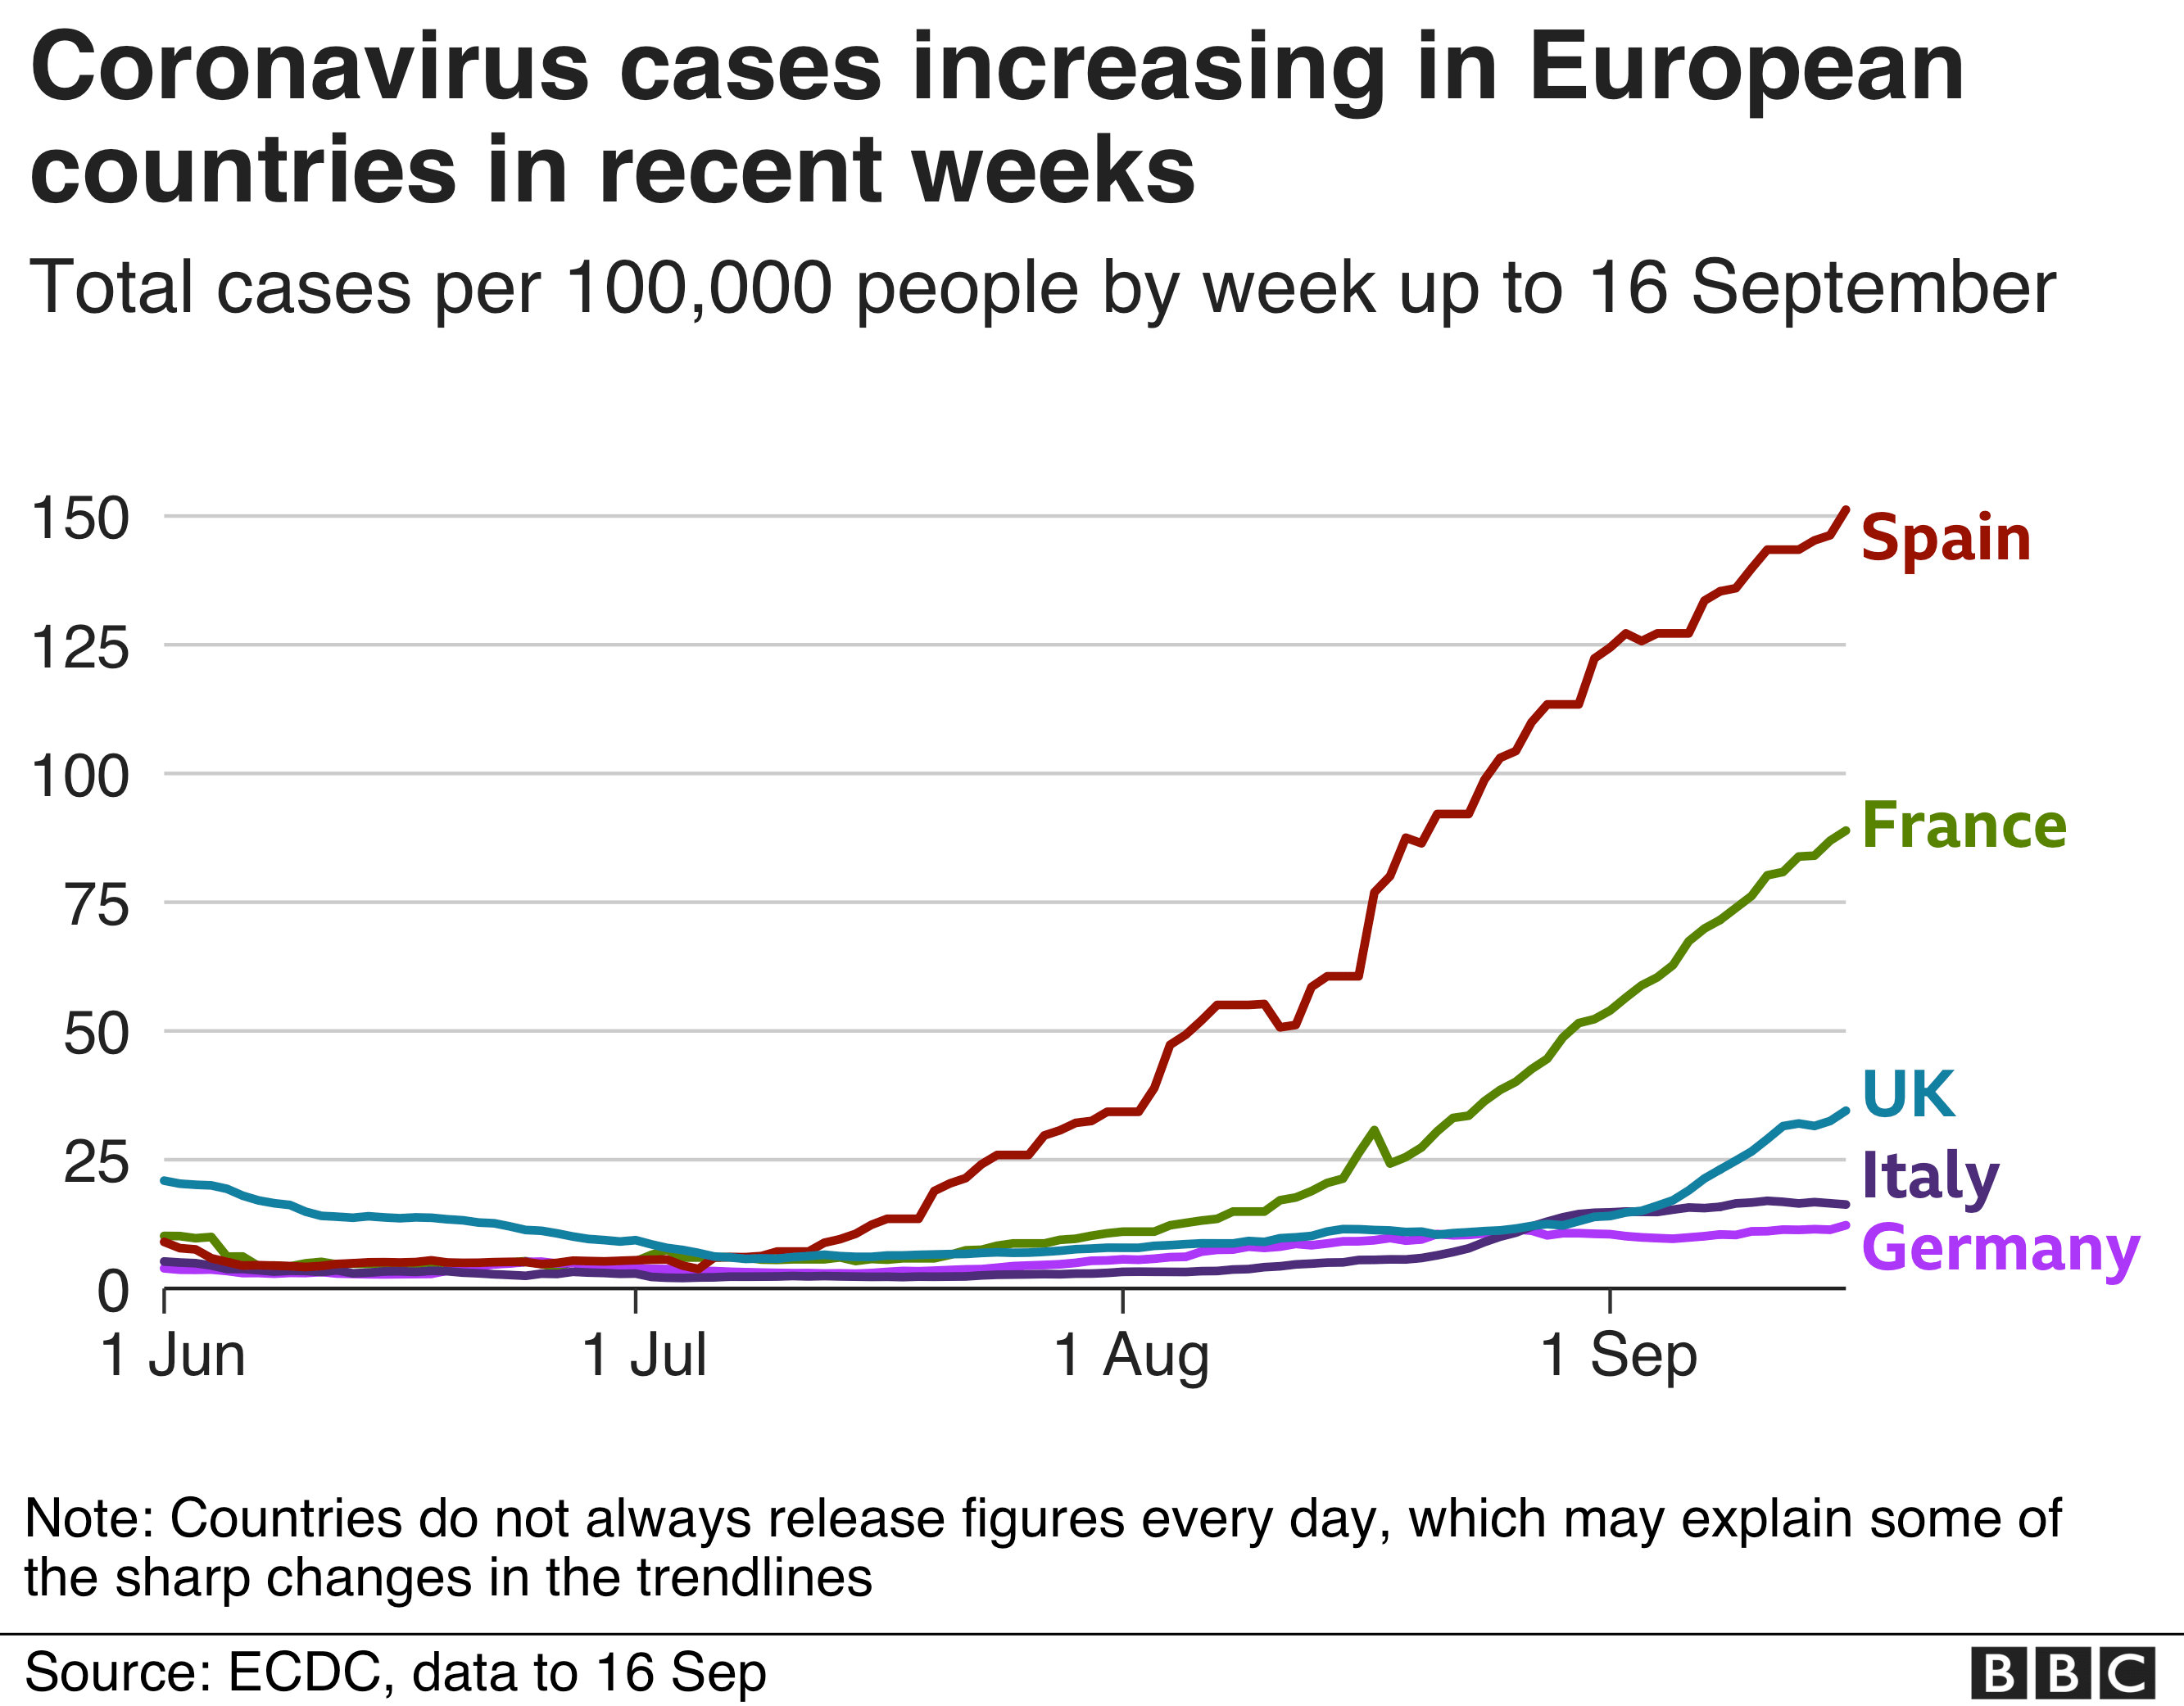 Coronavirus cases increasing in Europe 18-9-2020 - enlarge